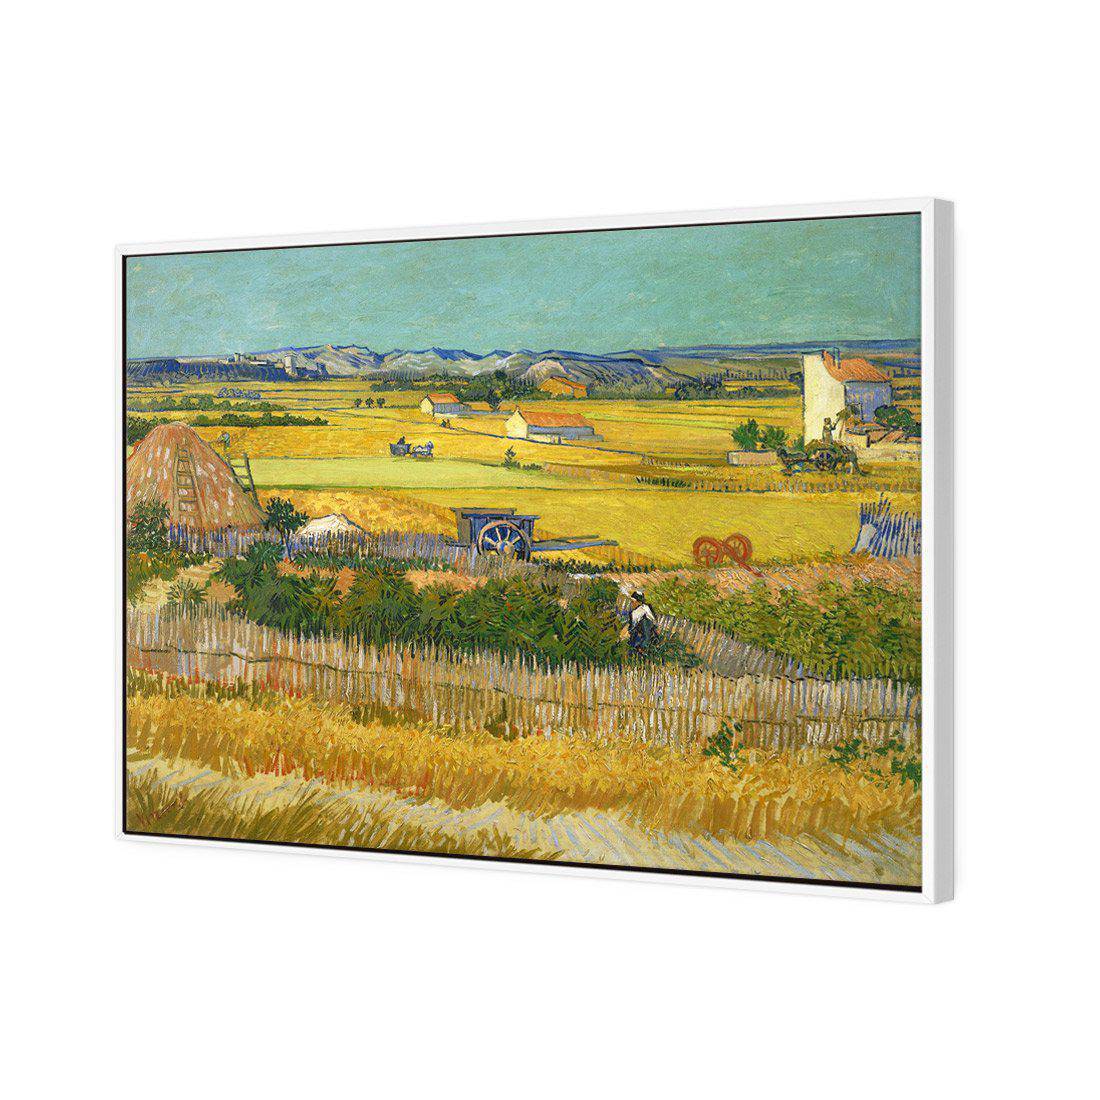 Harvest - Van Gogh Canvas Art-Canvas-Wall Art Designs-45x30cm-Canvas - White Frame-Wall Art Designs